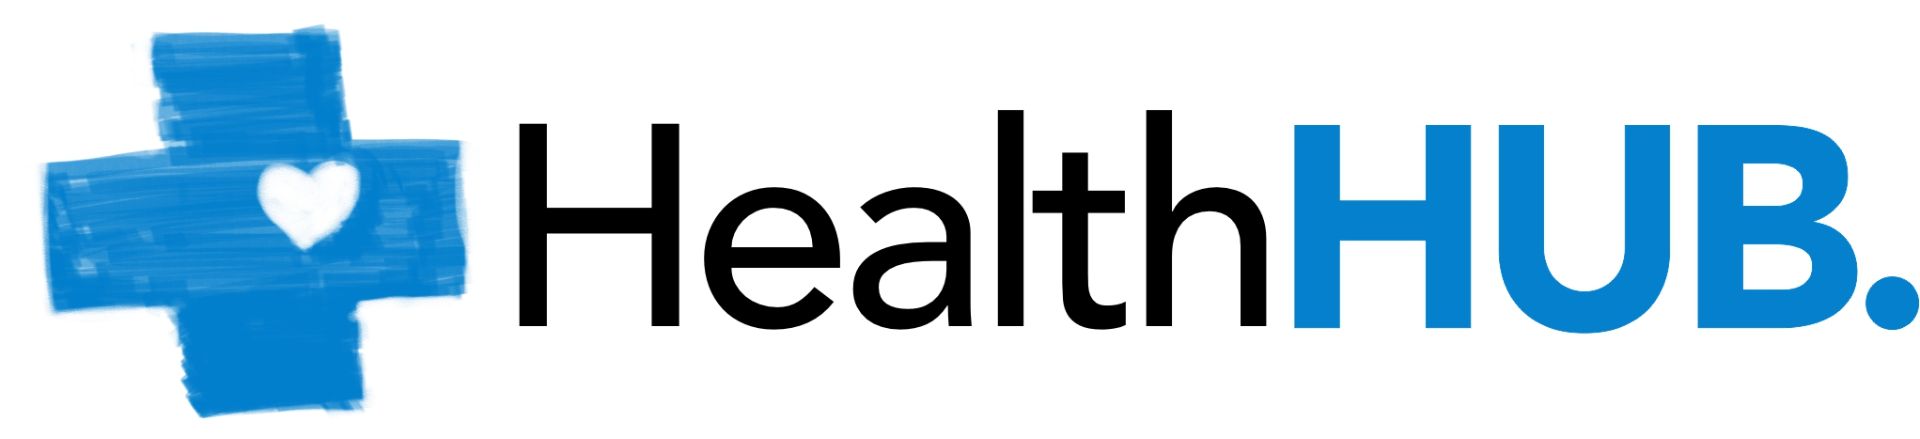 HealthHub: Primul hub de comunicare în sănătate din România